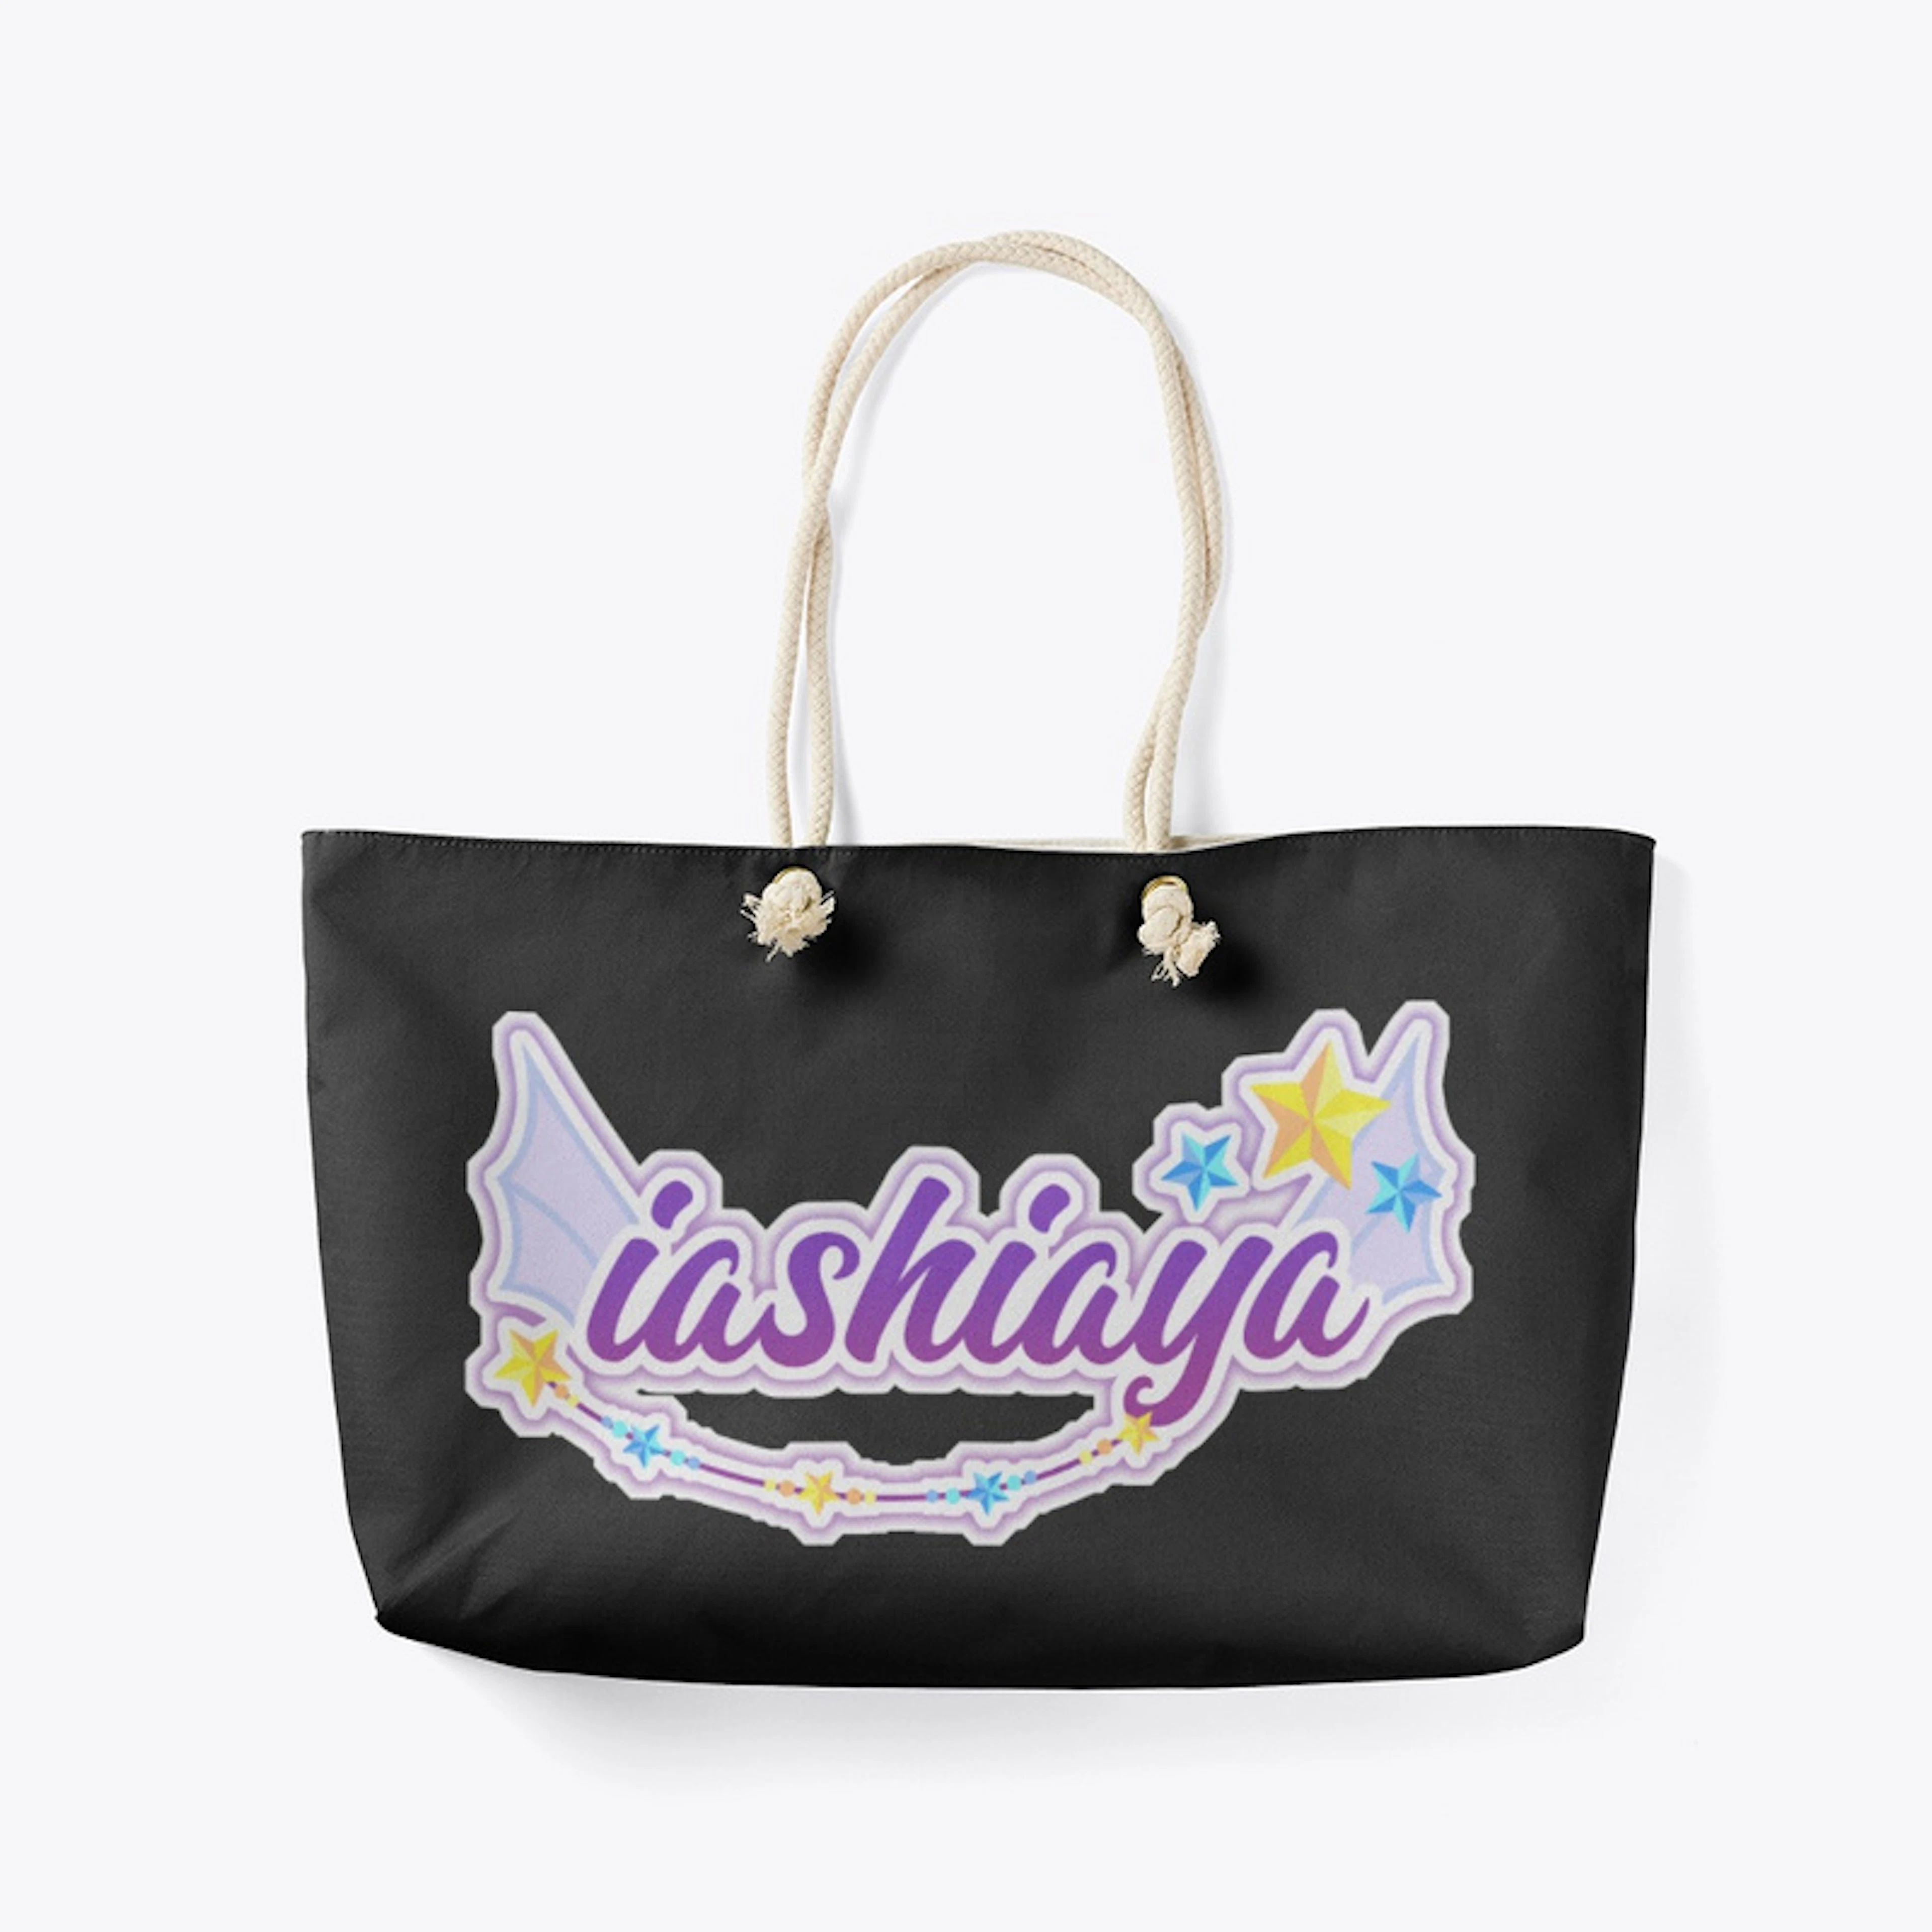 Iashiaya logo! 